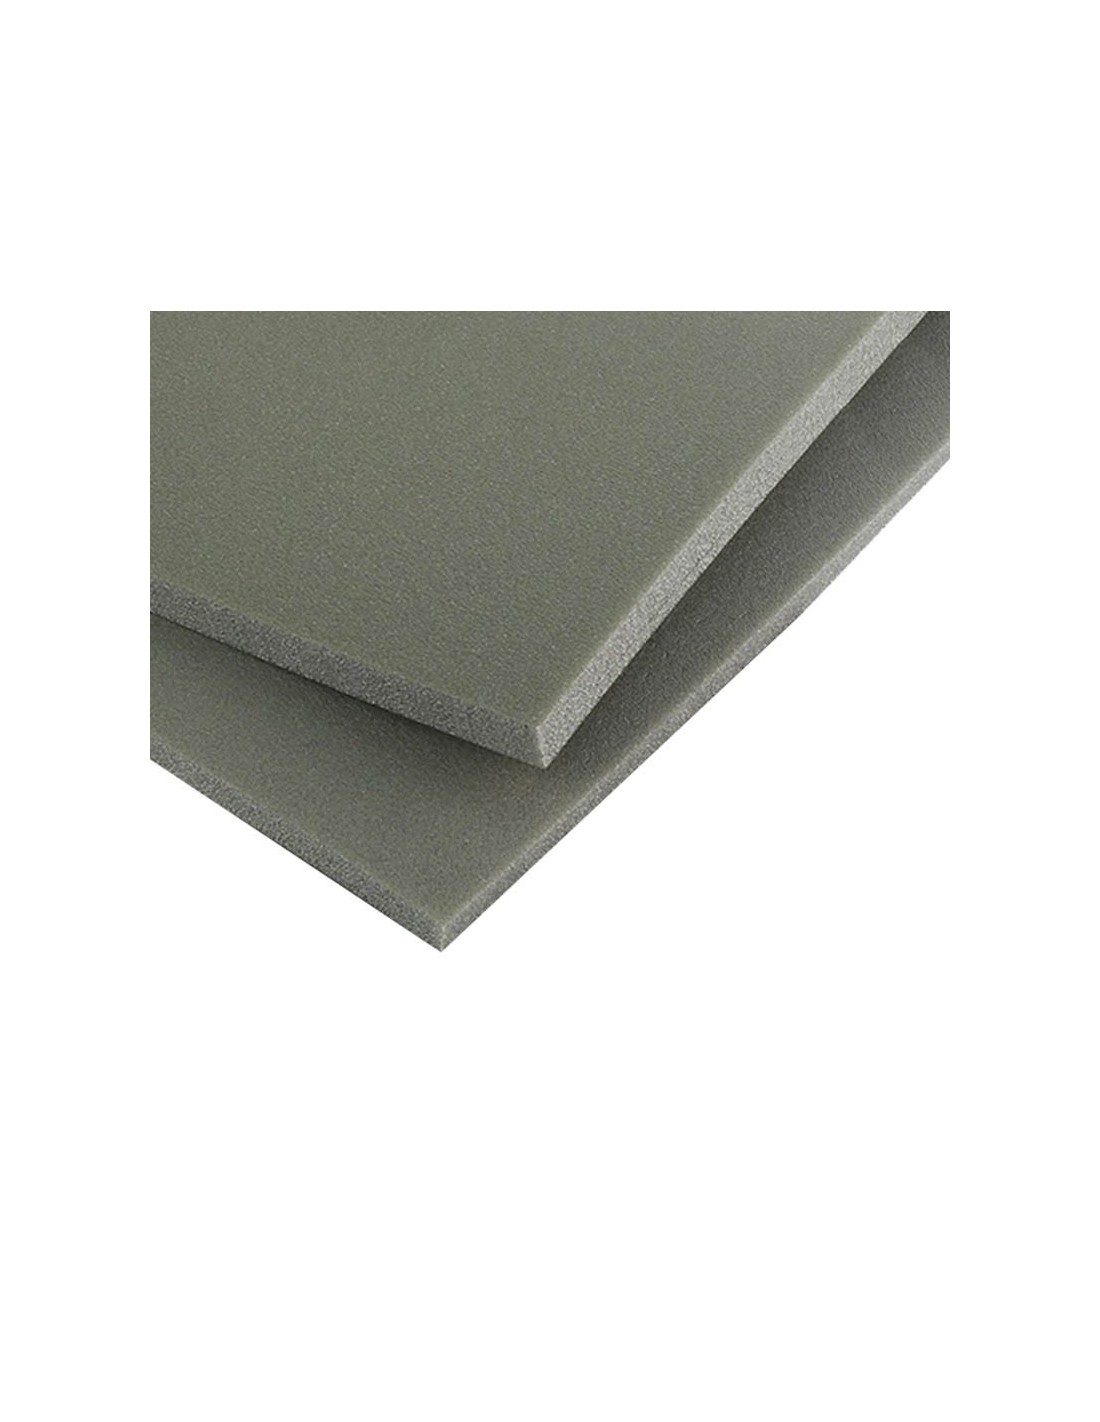 Plancha de PVC compacto gris - Resopal